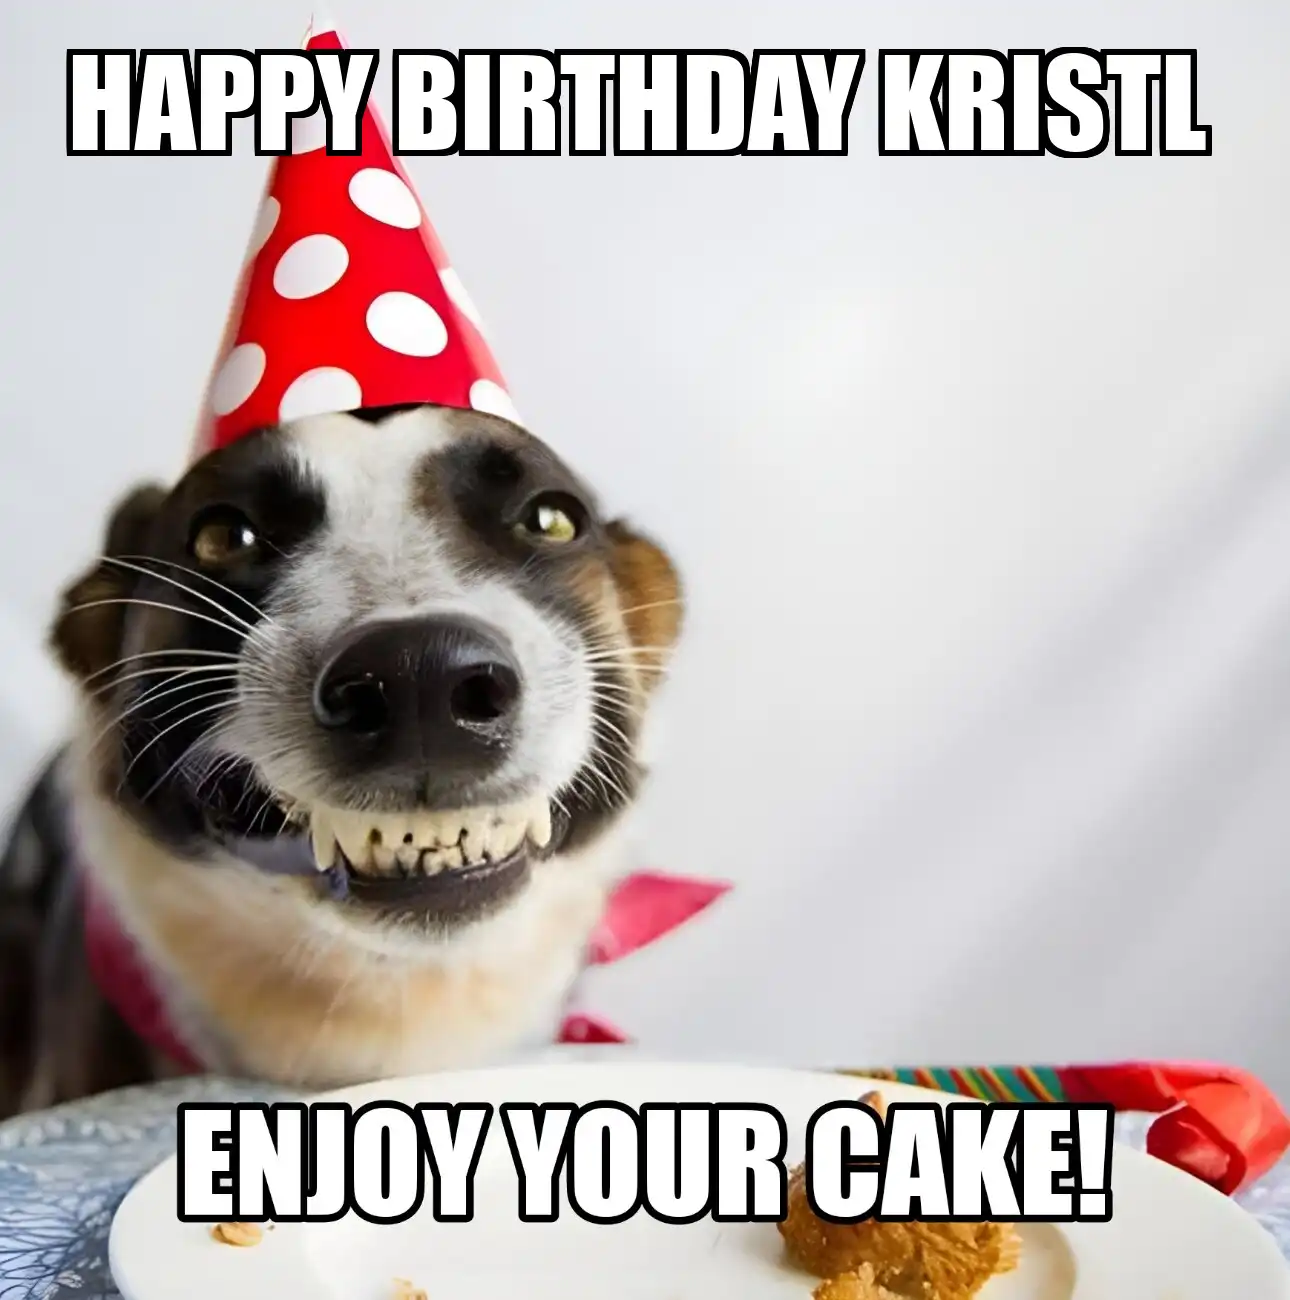 Happy Birthday Kristl Enjoy Your Cake Dog Meme